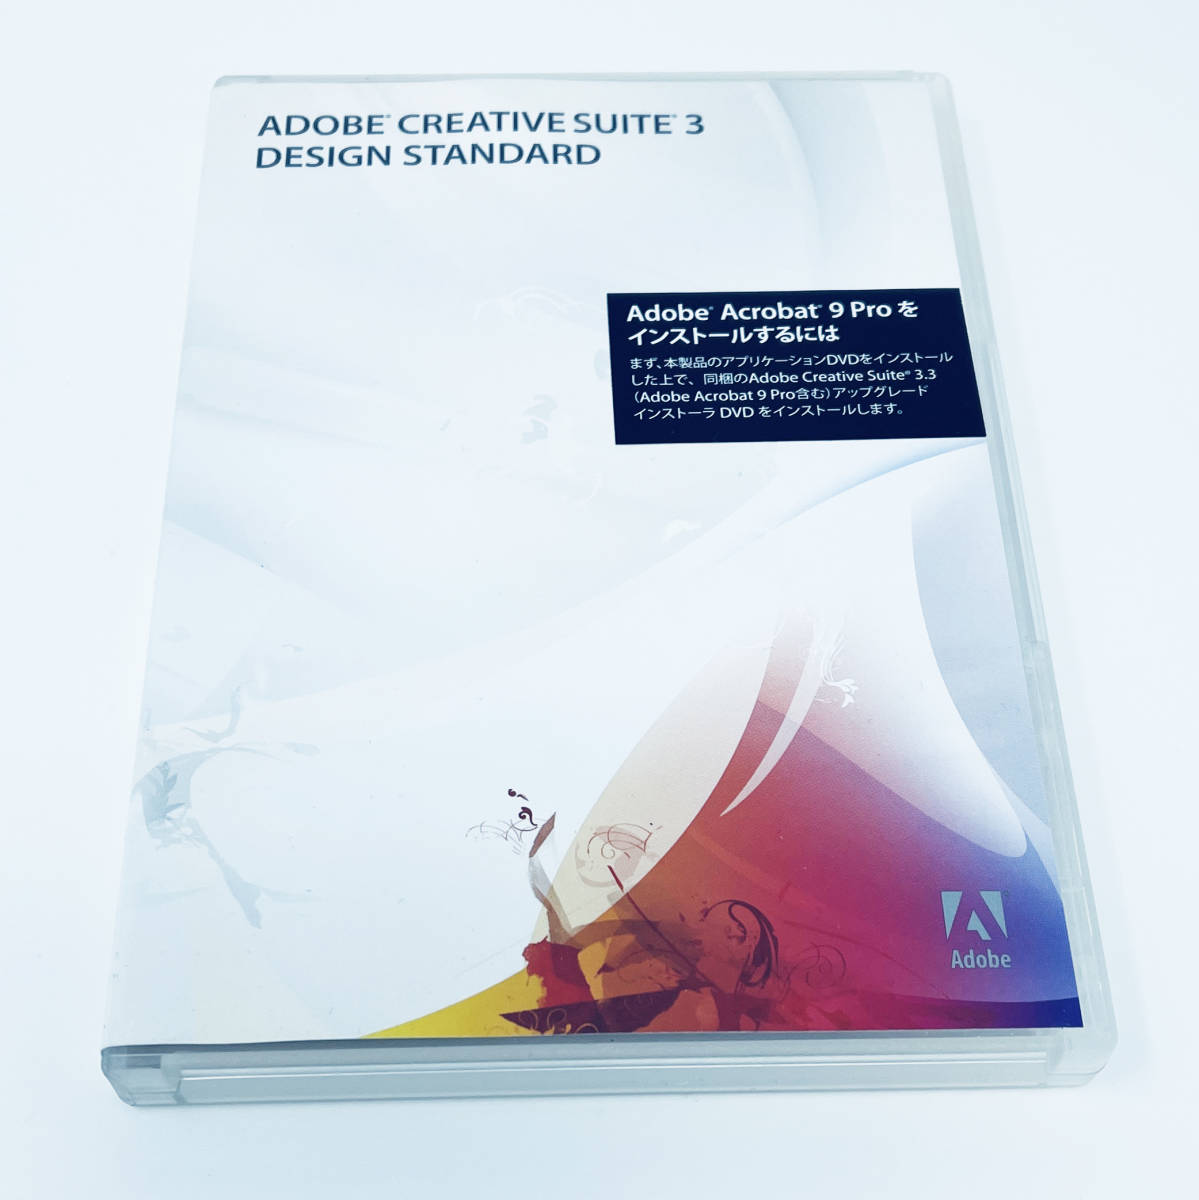 一番の Suite Creative 中古品☆Adobe 3 Macintosh版 Standard Design - ペイント、フォトレタッチ -  www.amf46.fr